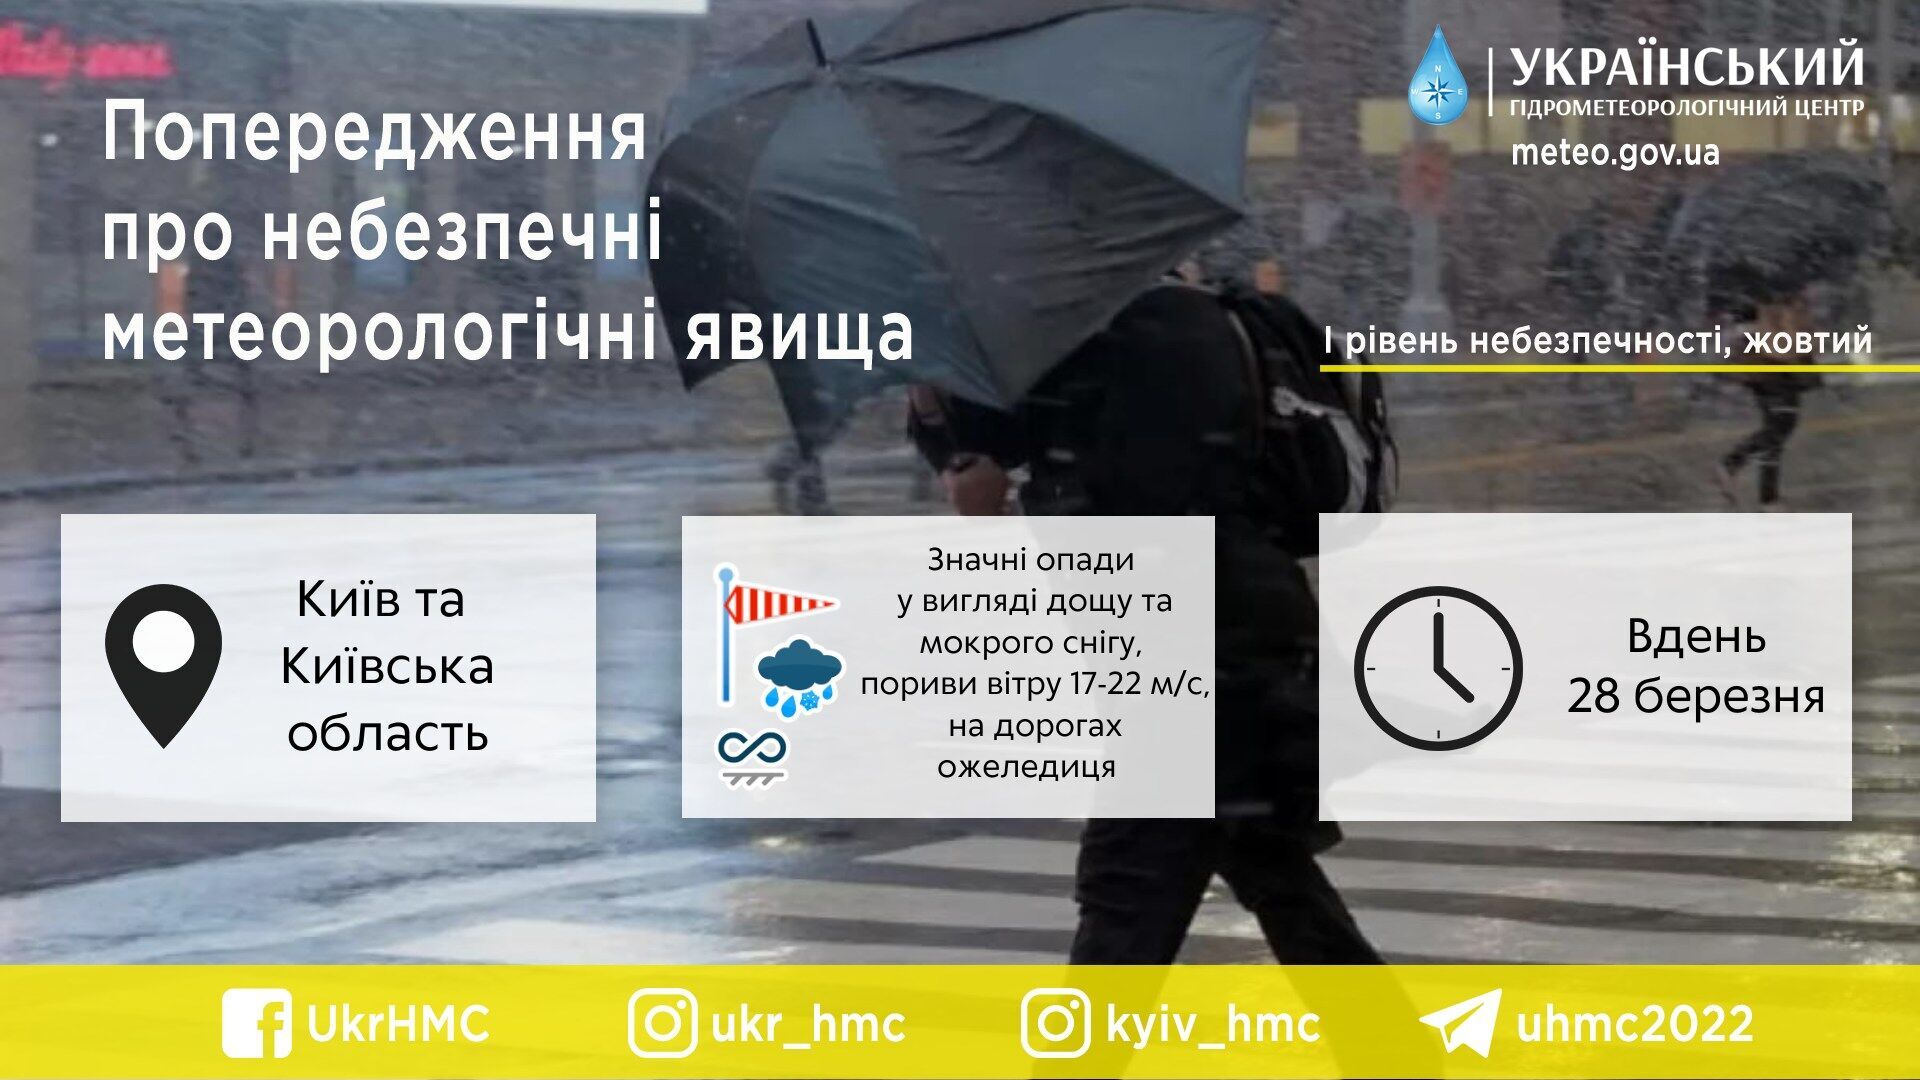 В Украину идет непогода с дождями и мокрым снегом: синоптики рассказали, где будет самая плохая погода. Карта